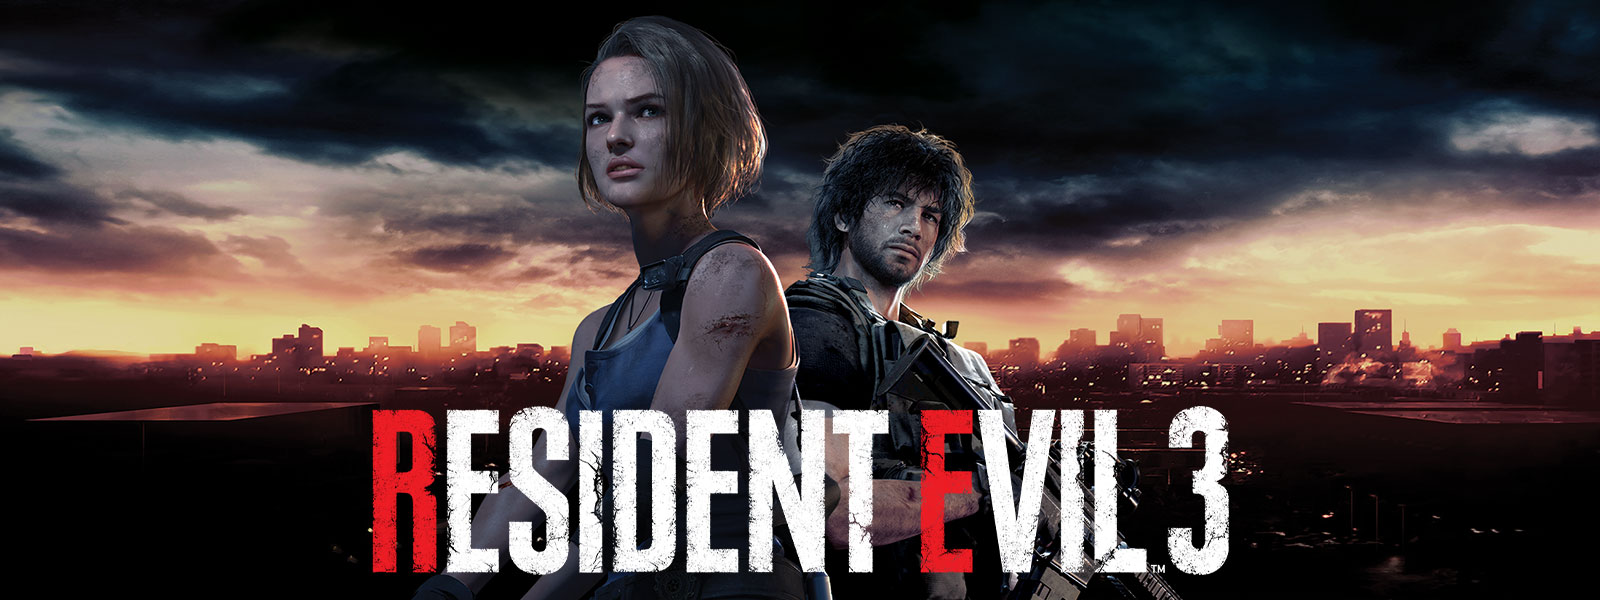 Resident Evil 3, Jill Valentine und Carlos Oliveira stehend, mit der Skyline von Raccoon City im Rücken